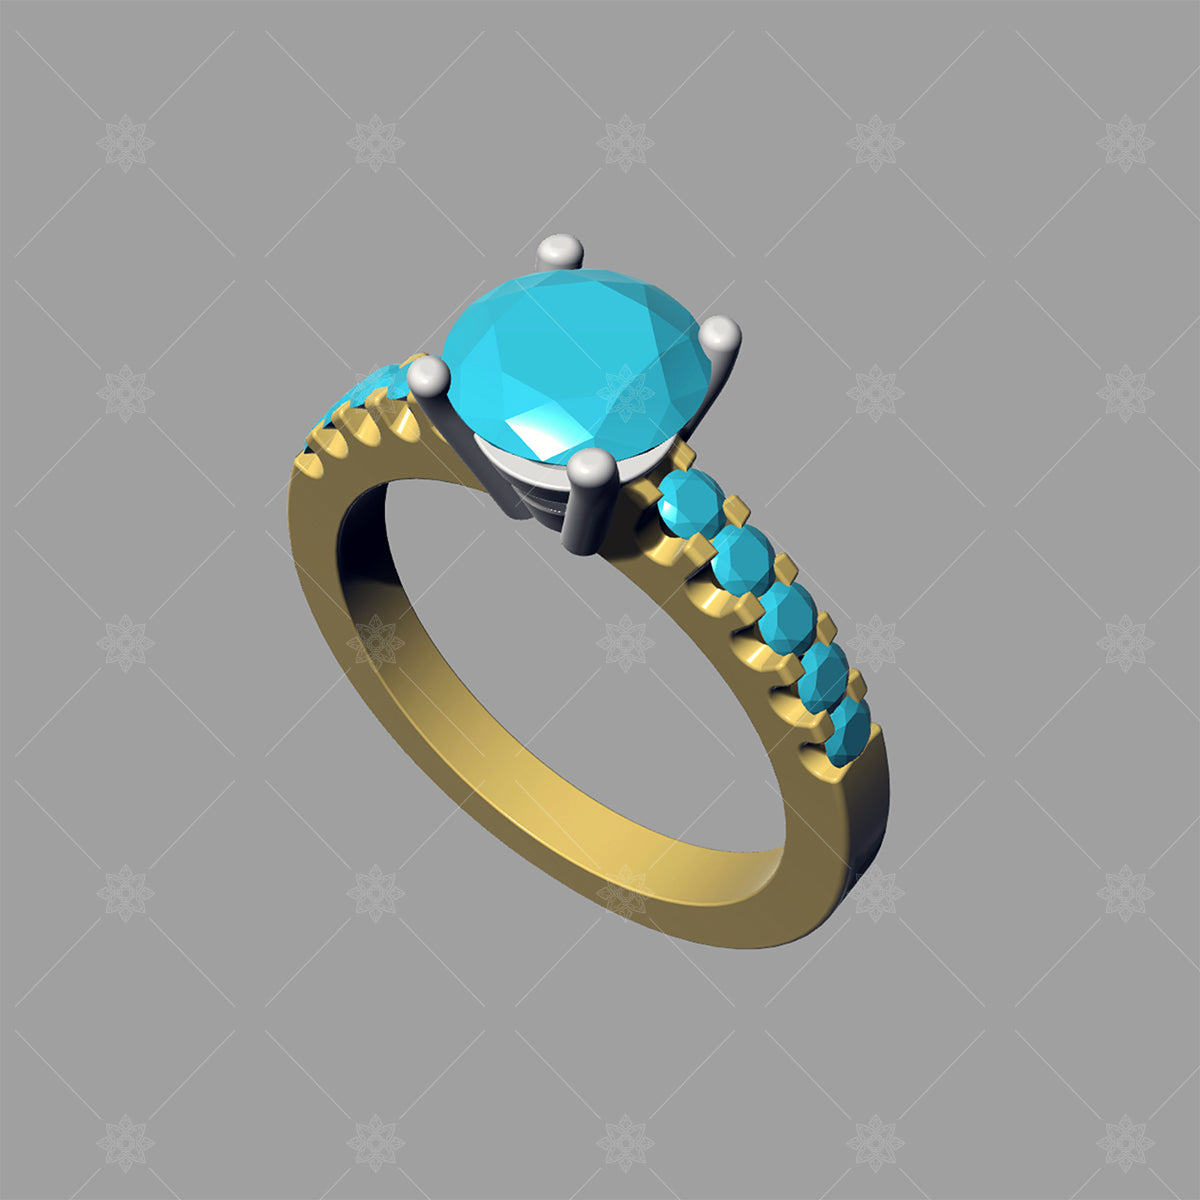 Wedding Ring, Jewellery 3D Model, Women's Ring model stl file for 3D  printing 41 - Dezin.info